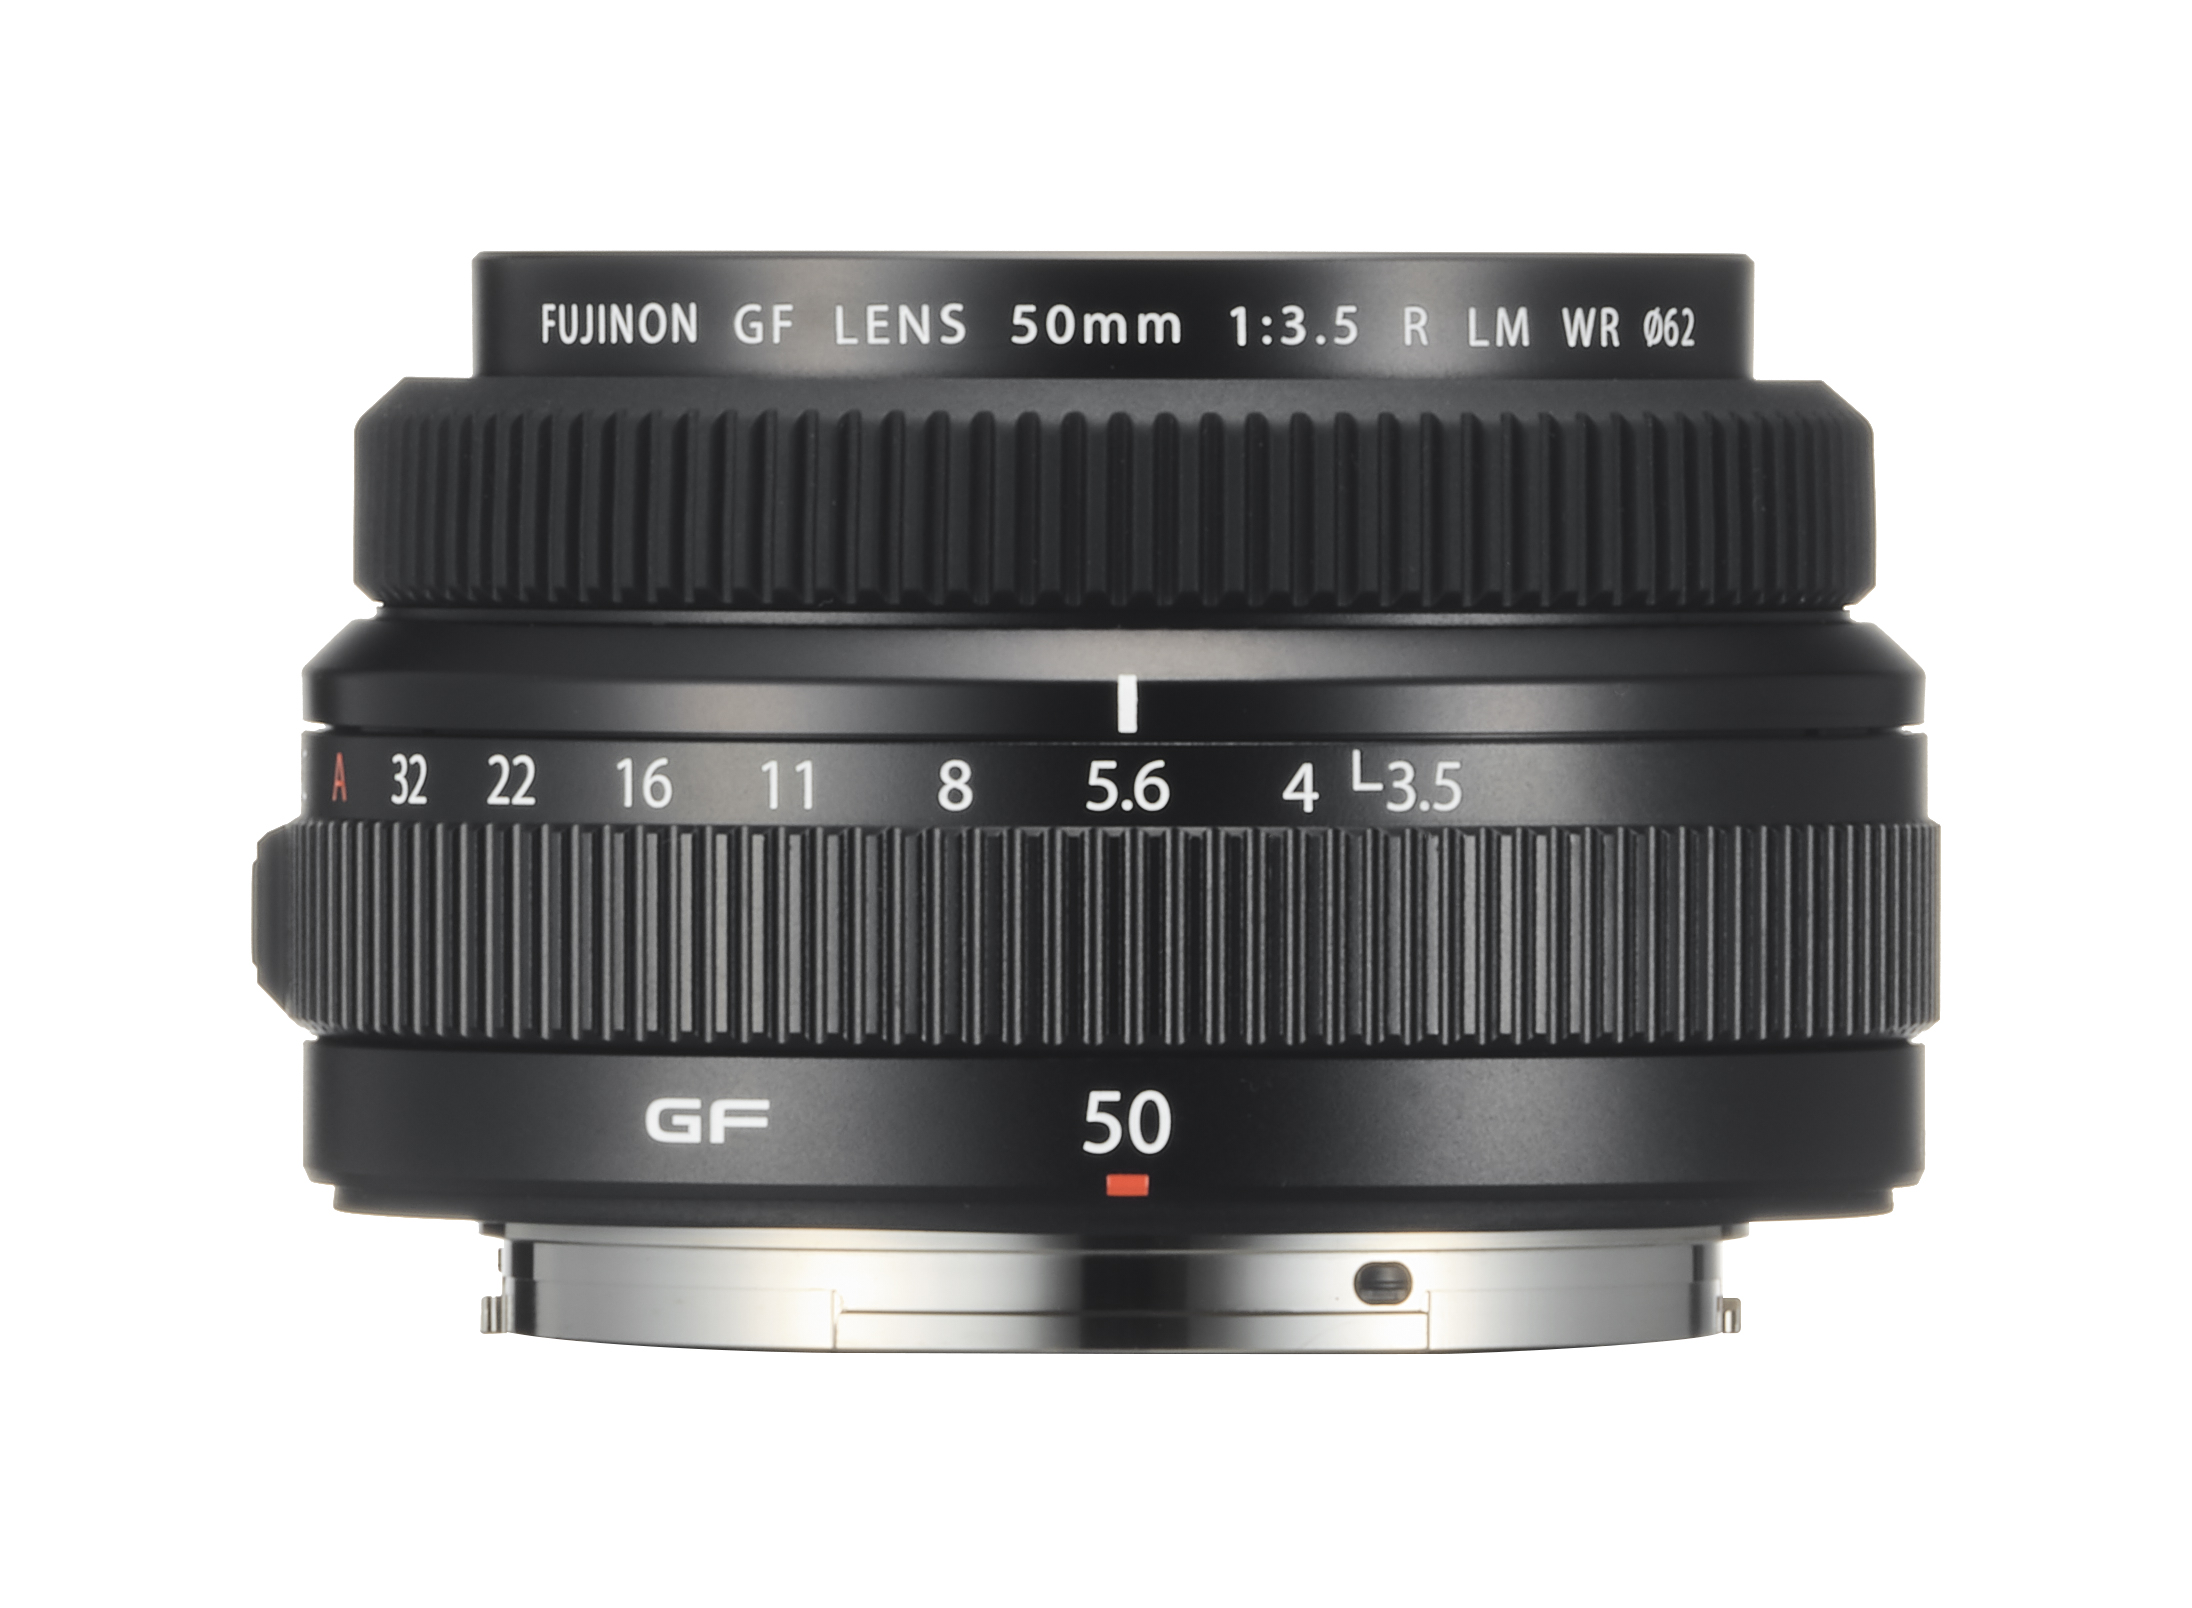 GF-Objektive, wie das Fujinon GF50mmF3.5 R LM WR sind für das GFX-Mittelformatsystem gerechnet und können so das volle Potenzial dieser spiegellosen Digitalkameras - Fujifilm GFX100, GFX 50S und GFX 50R - nutzen.